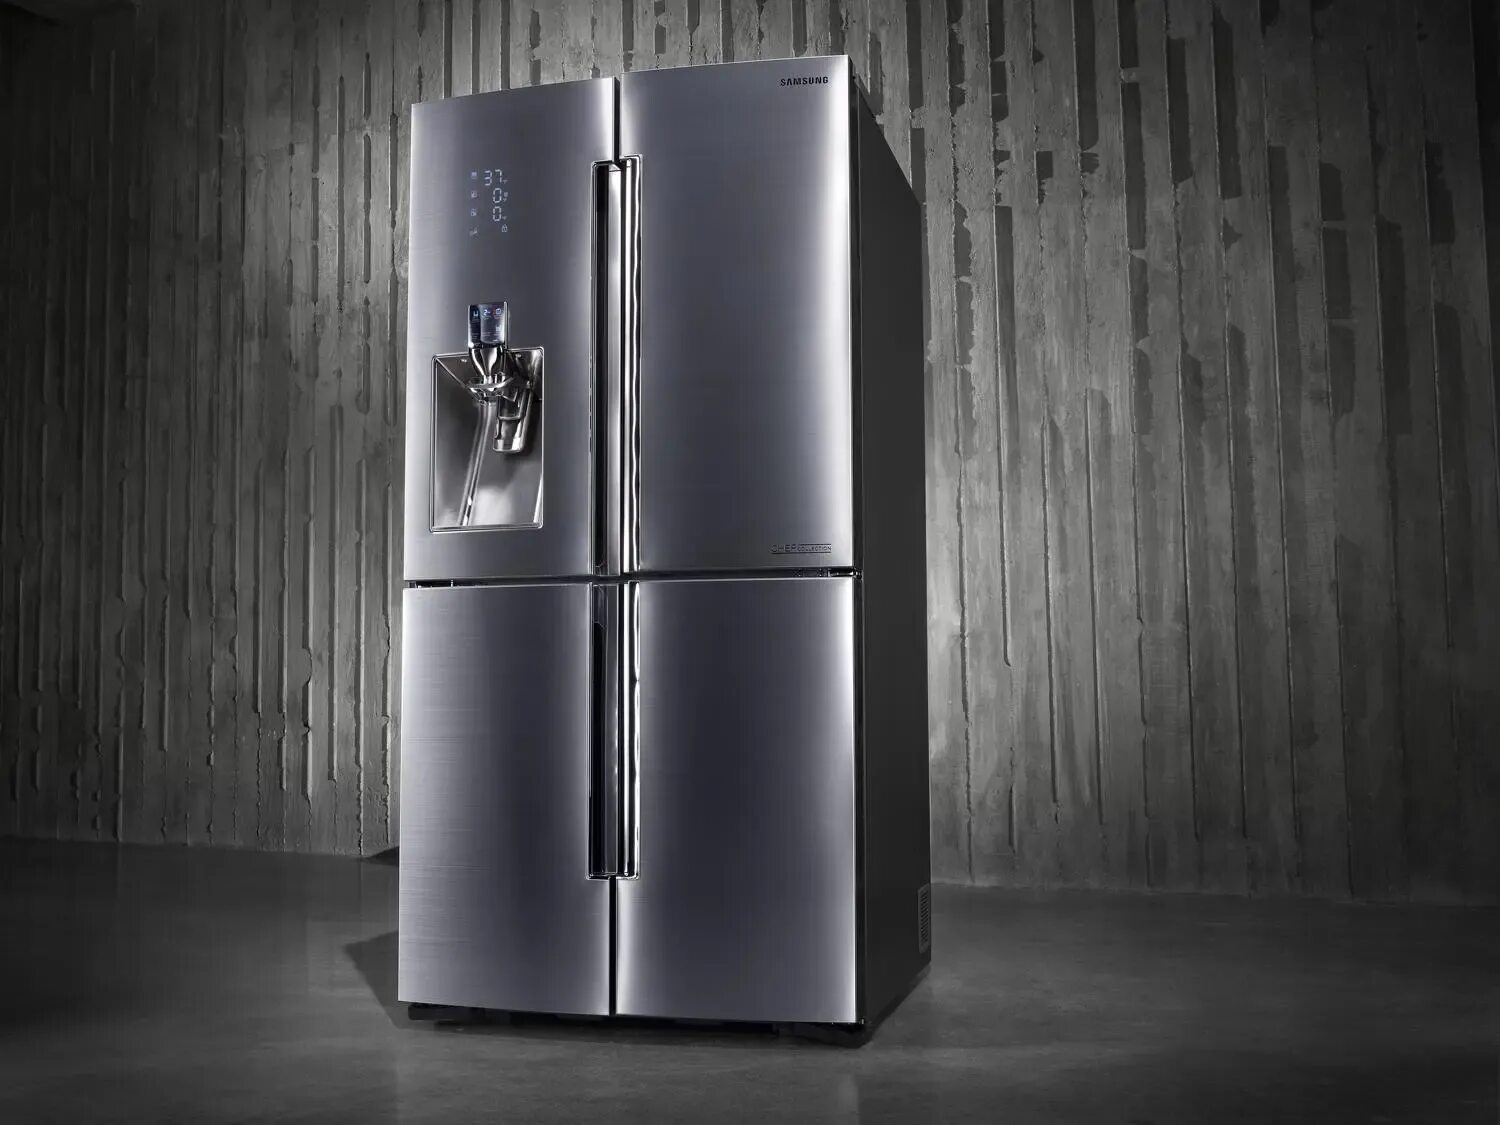 Холодильник Haier HRF-541dm7ru. Холодильник Samsung rsj1kers. Многодверный Haier hb18fgwaaaru. Холодильник (Side-by-Side) LG GC-q247cbdc. Холодильники новые модели